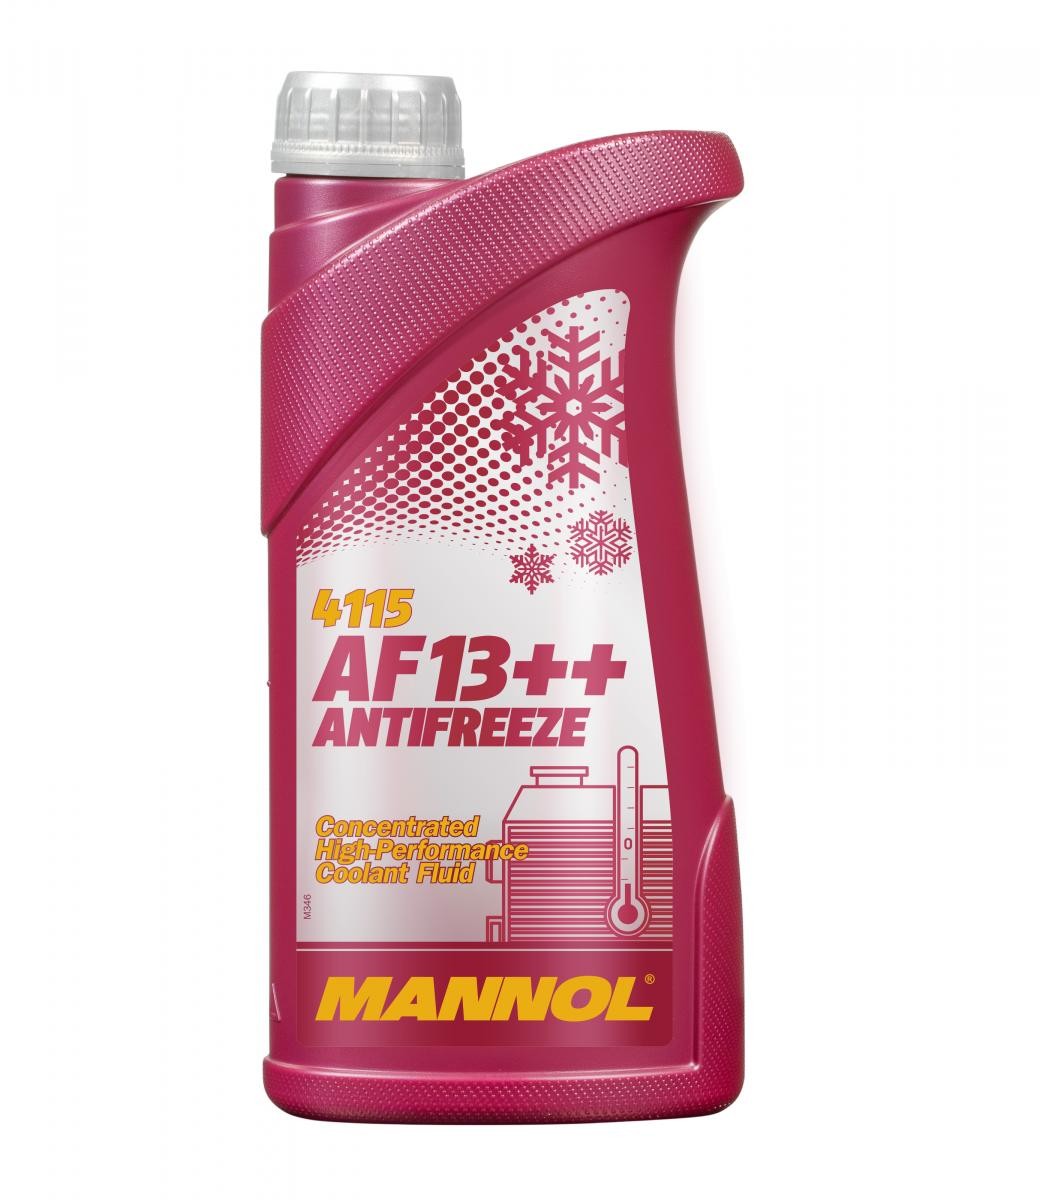 DERBI SENDA Kühlmittel G12 Rot, 1l, -38(50/50) MANNOL AF13++, High-performance MN4115-1